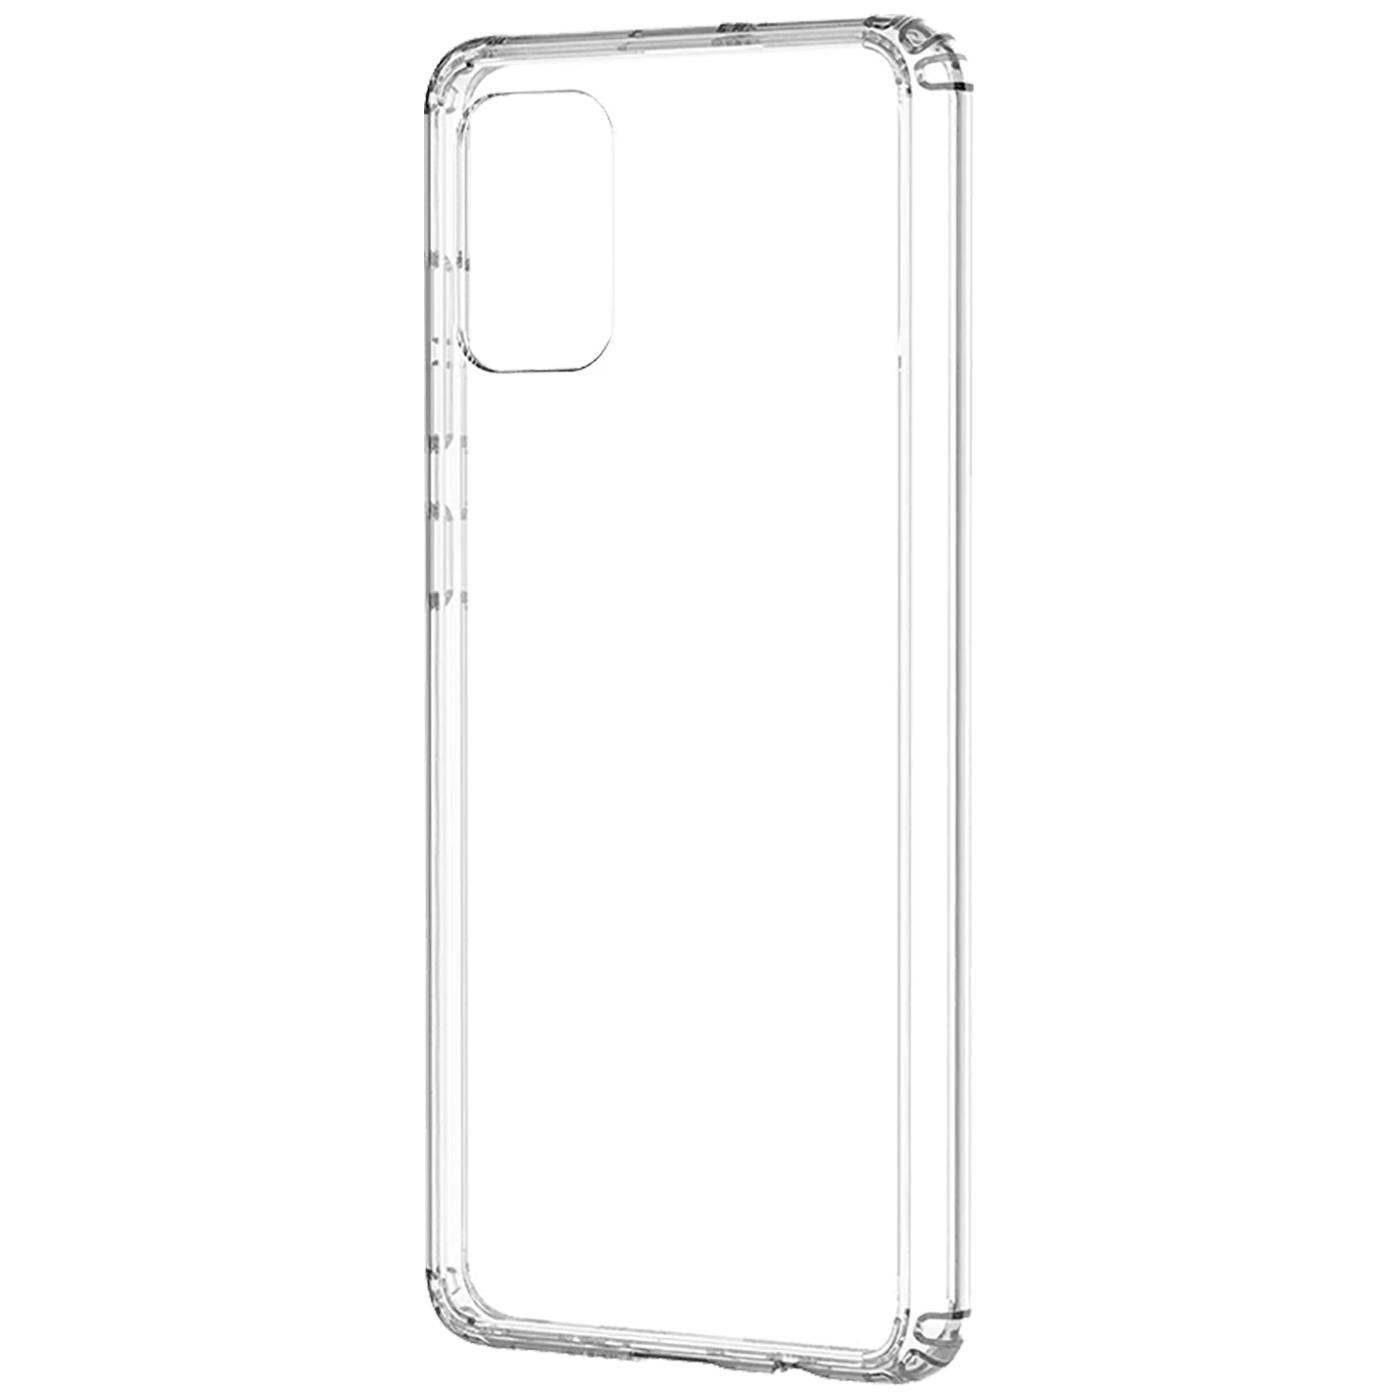 Futrola za mobitel Samsung A71, silikonska, transparent